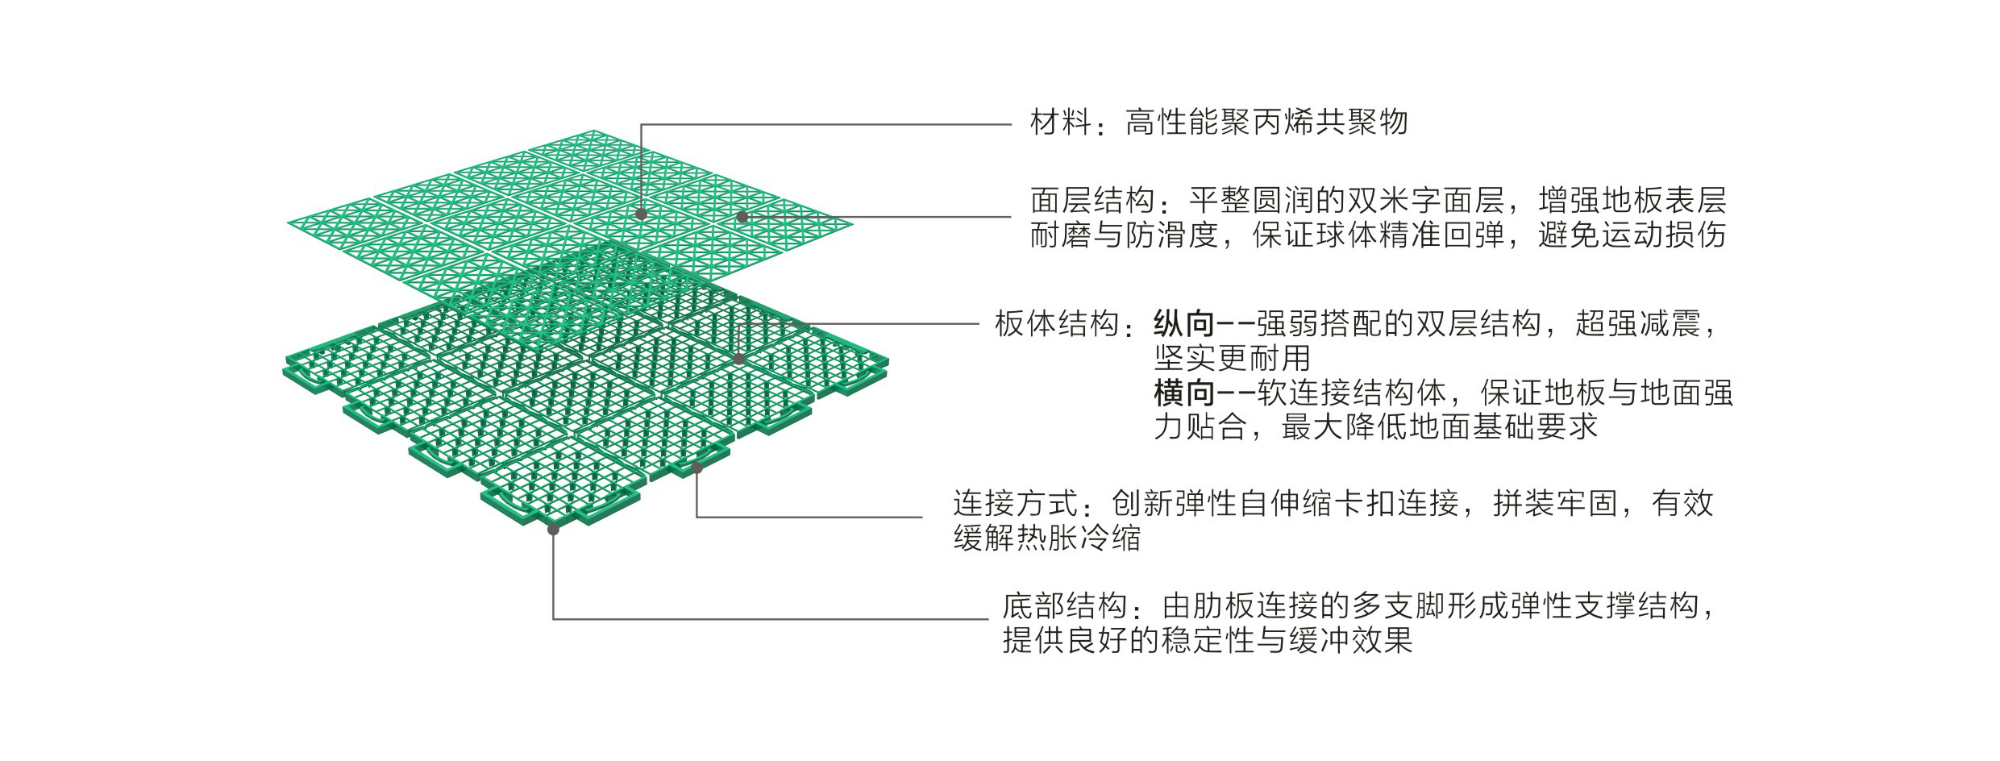 英利奥软连接一代悬浮式拼装地板-结构图